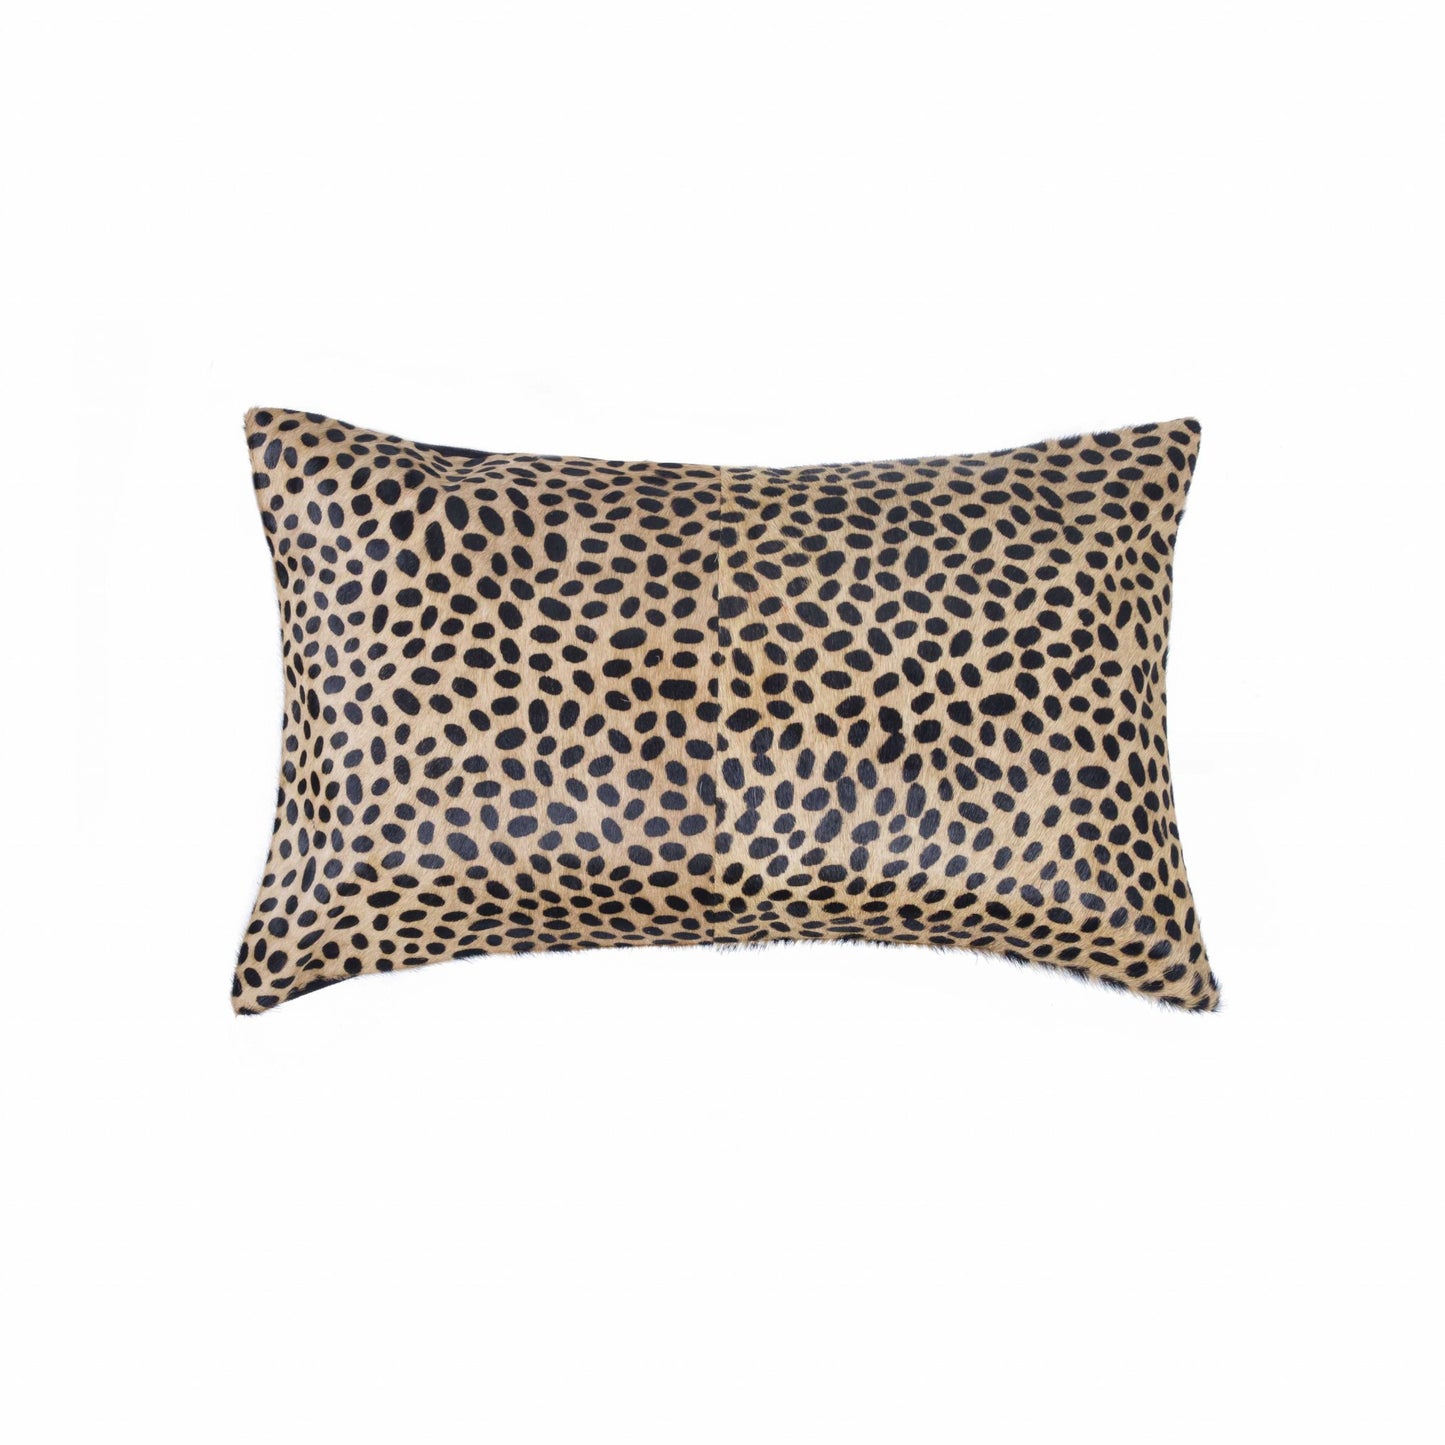 12" X 20" X 5" Cheetah Cowhide  Pillow